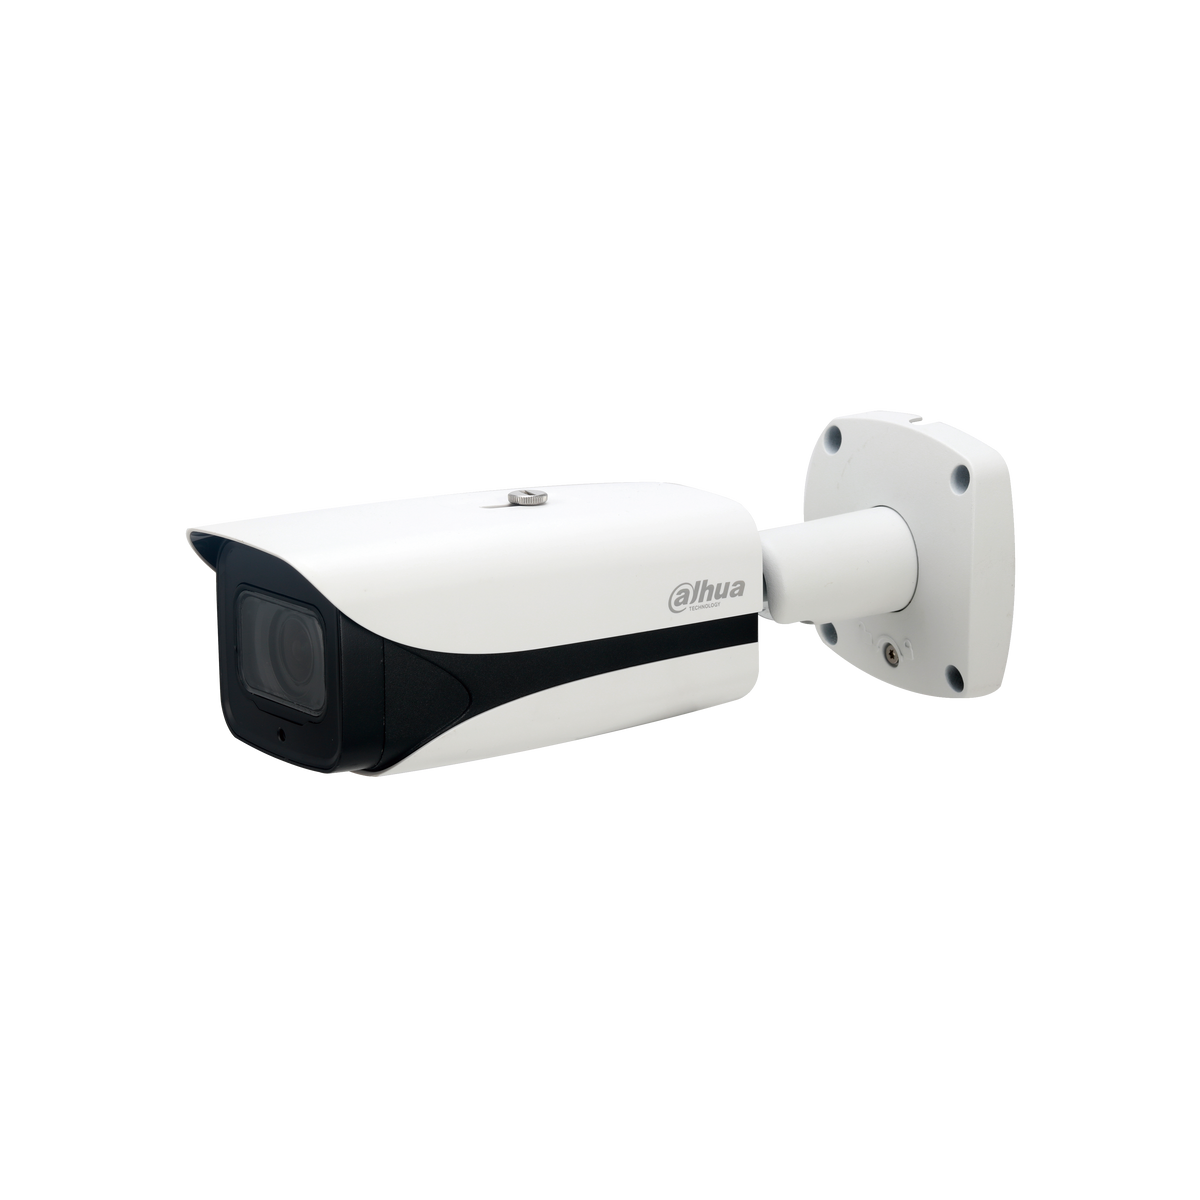 DAHUA IPC-HFW8241E-Z 2MP IR AI Bullet Network Camera